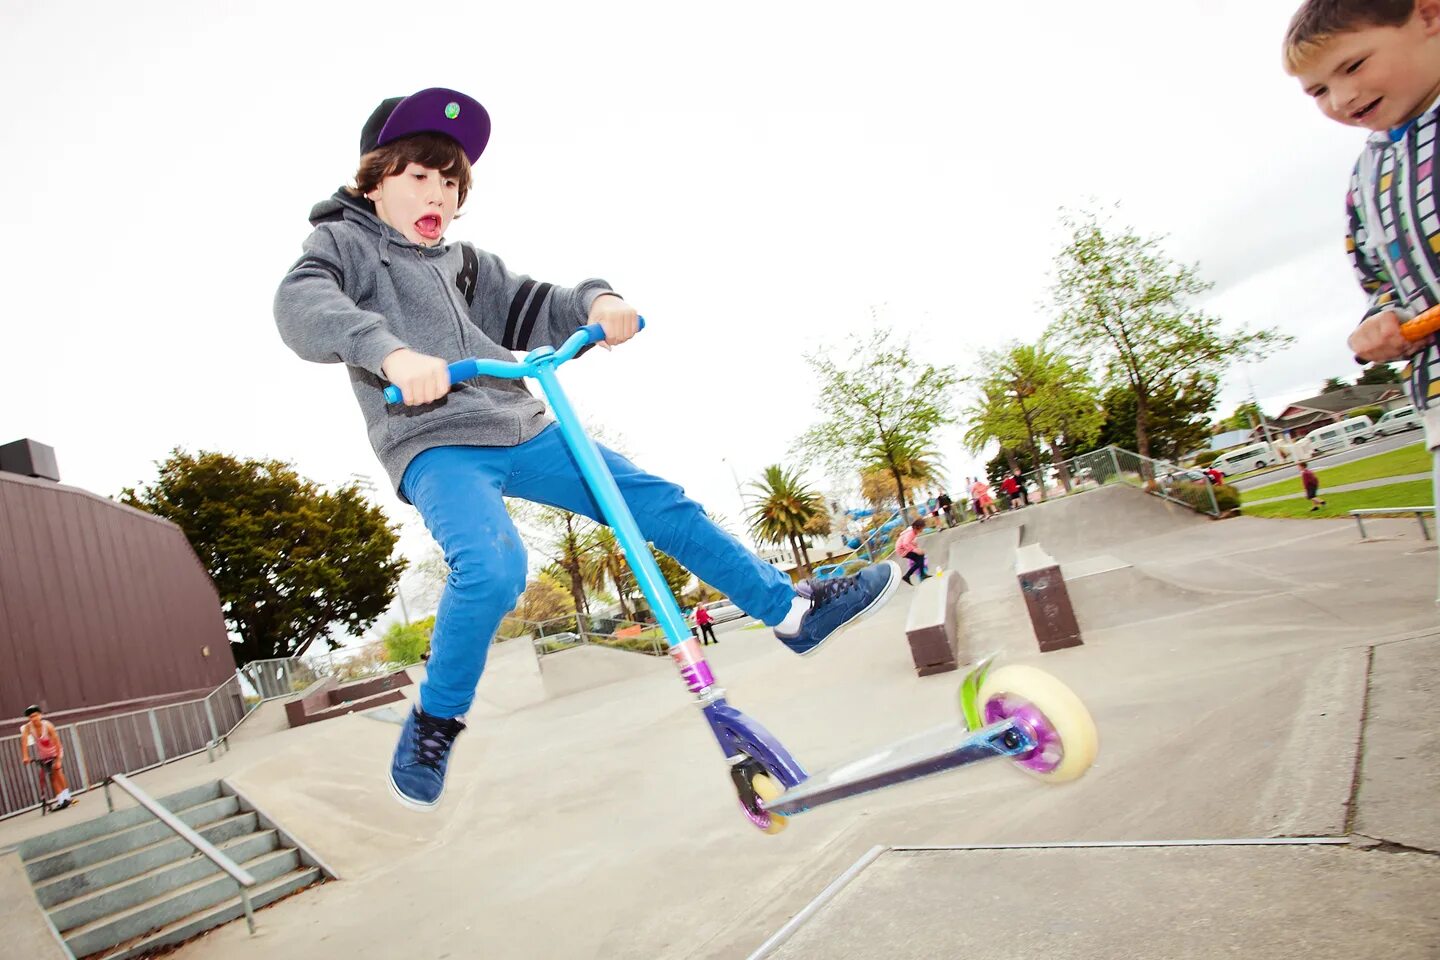 Самокат трюковой детский Skate. Трюковой самокат триад парк модель 2022 года. Ребенок на самокате. Трюки на самокате.